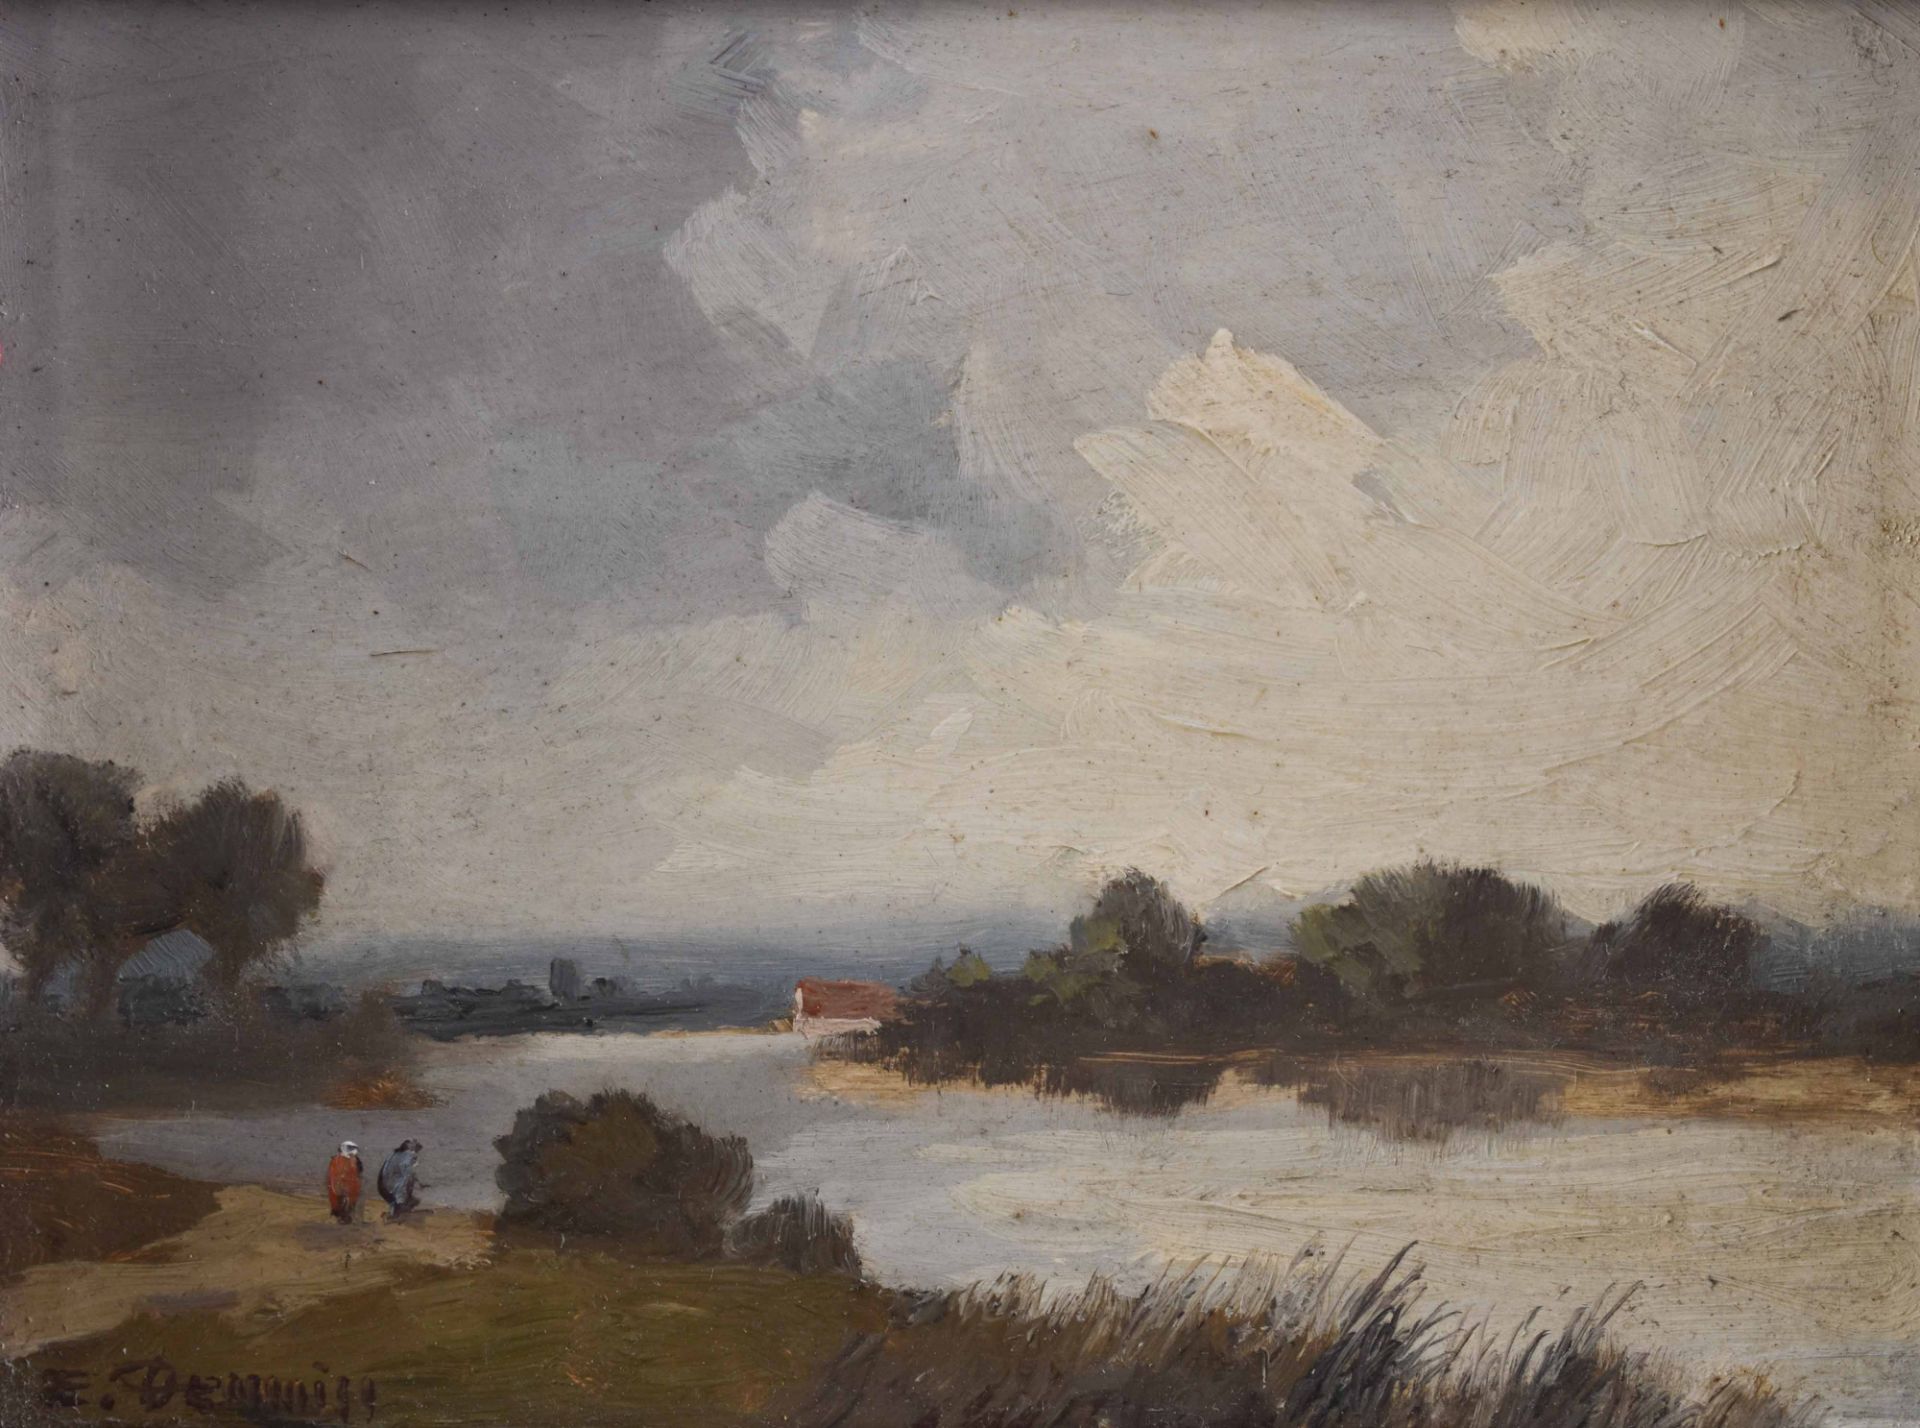 Erich DEMMIN (1911-1997)"River landscape"painting oil / wood, 11.5 cm x 15 cm, framed 23 cm x 27